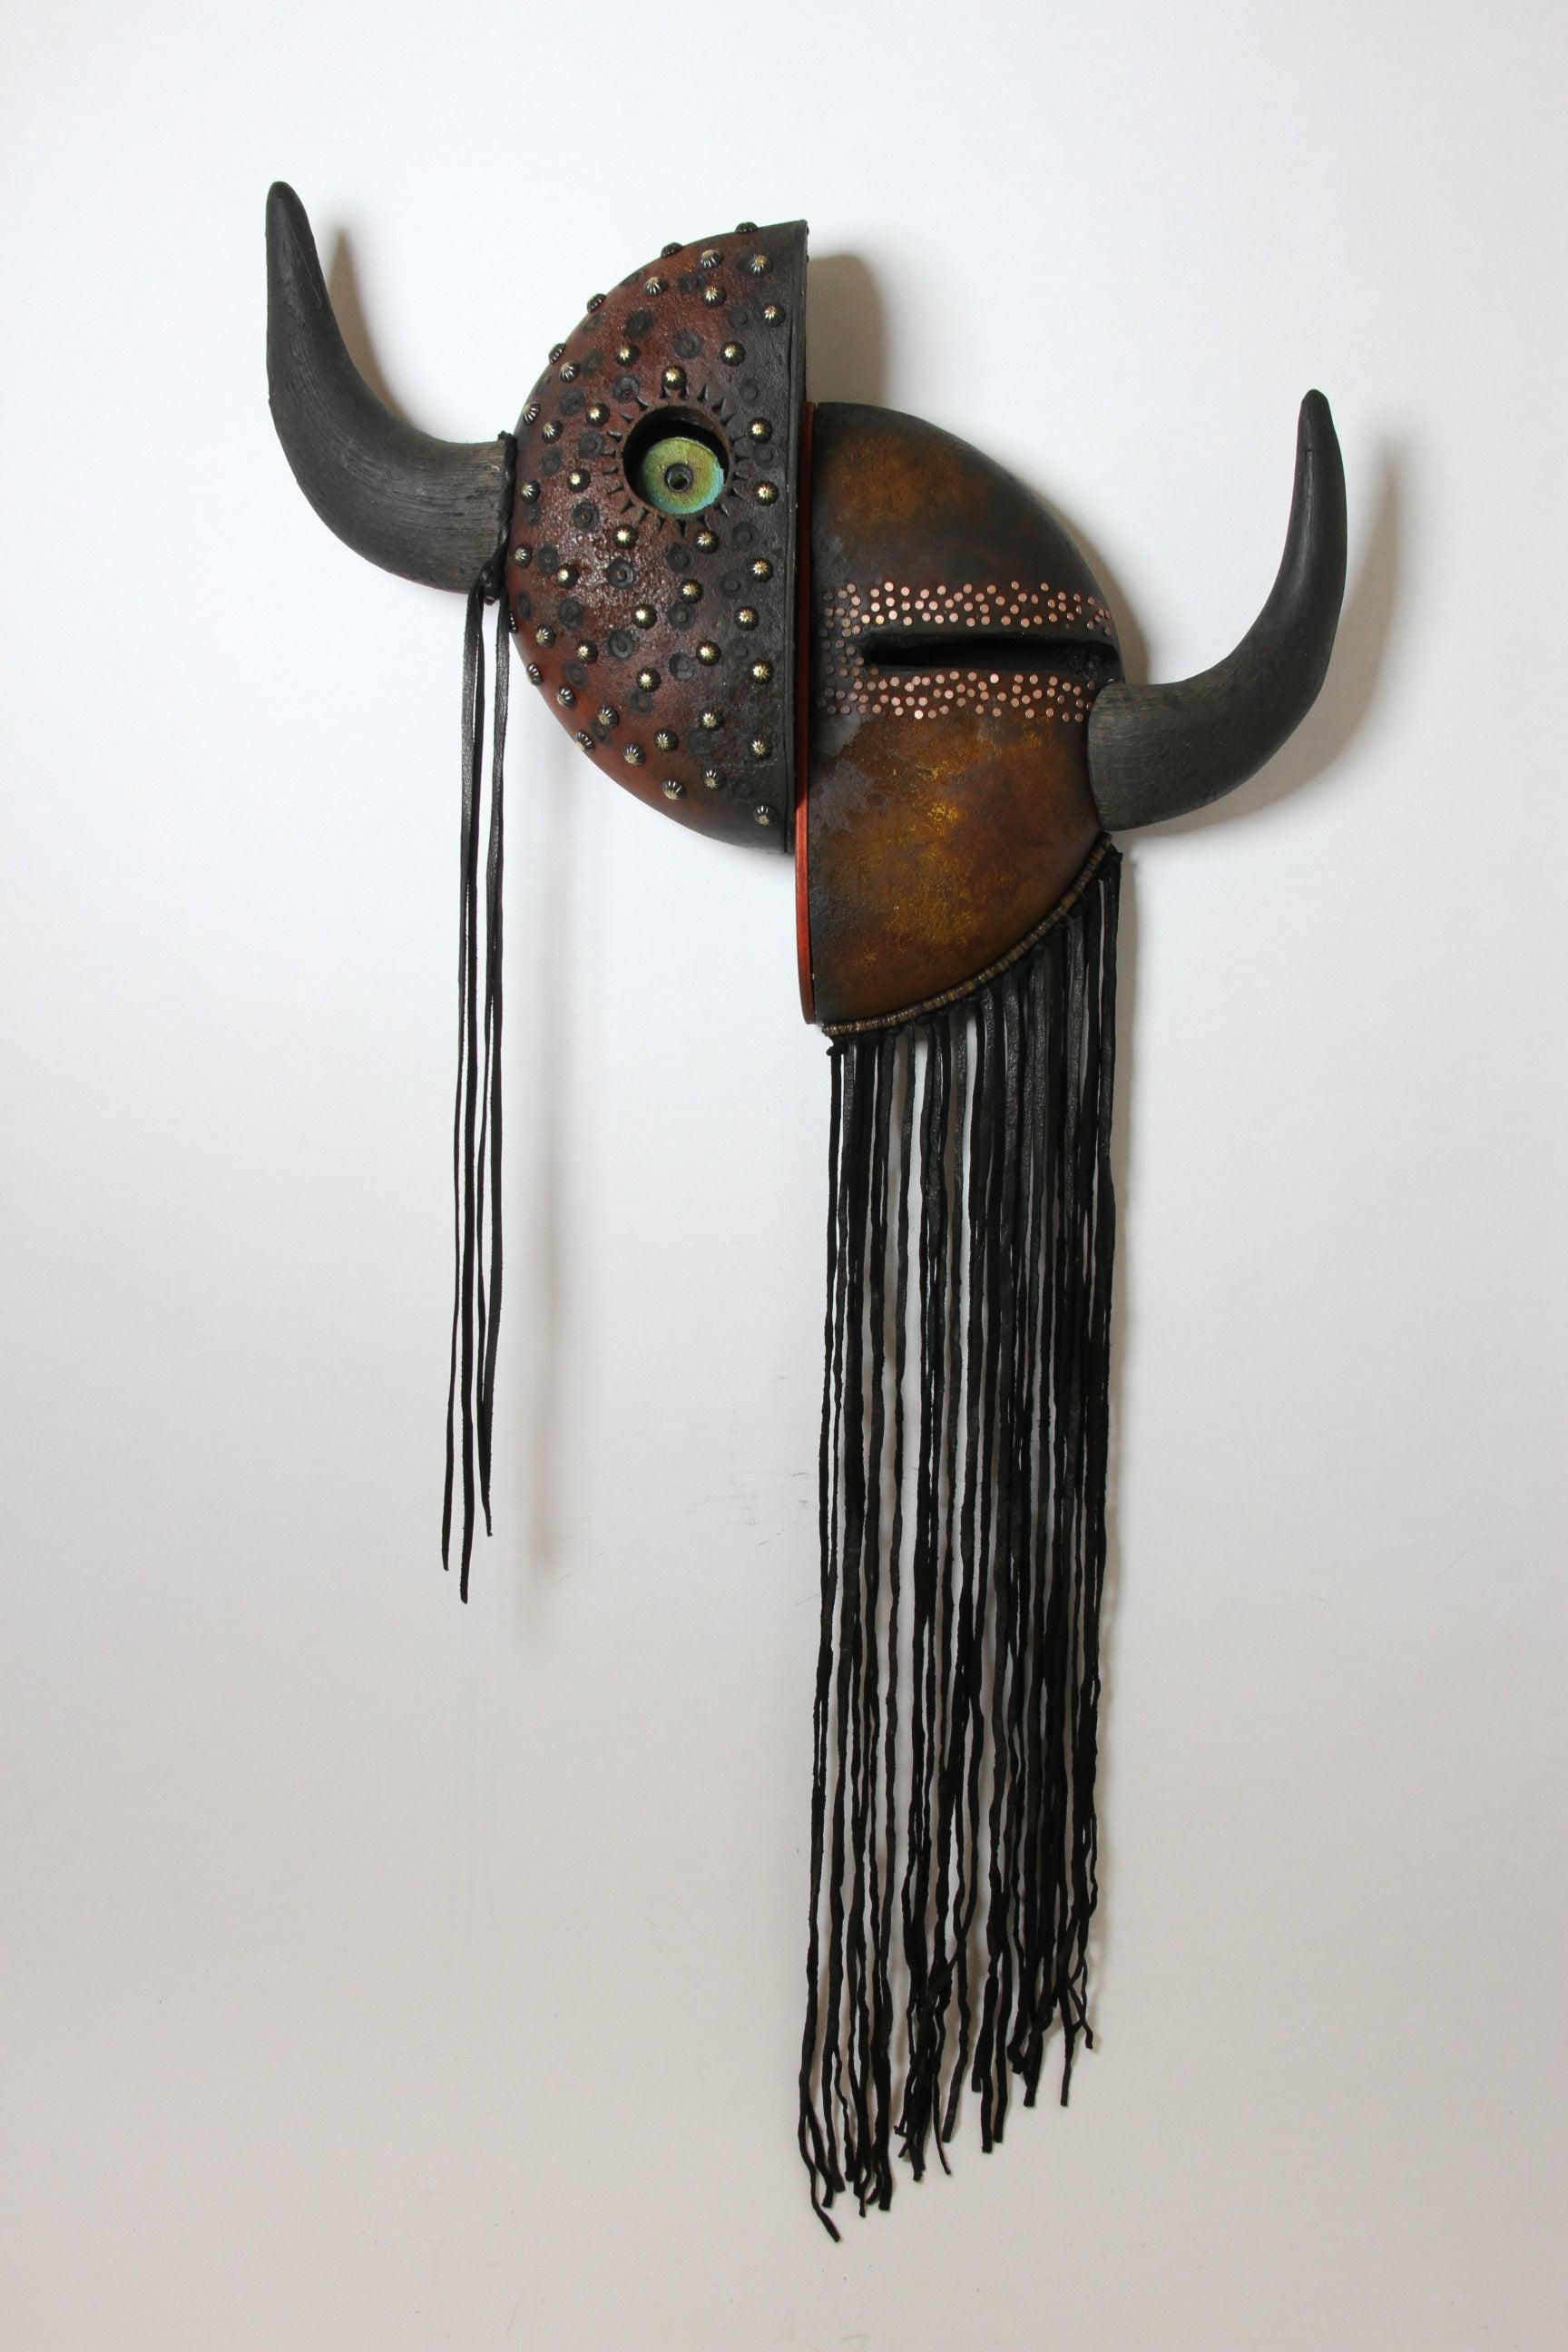 Contemporary Buffalo Mask-Gourd-Robert Rivera-Sorrel Sky Gallery